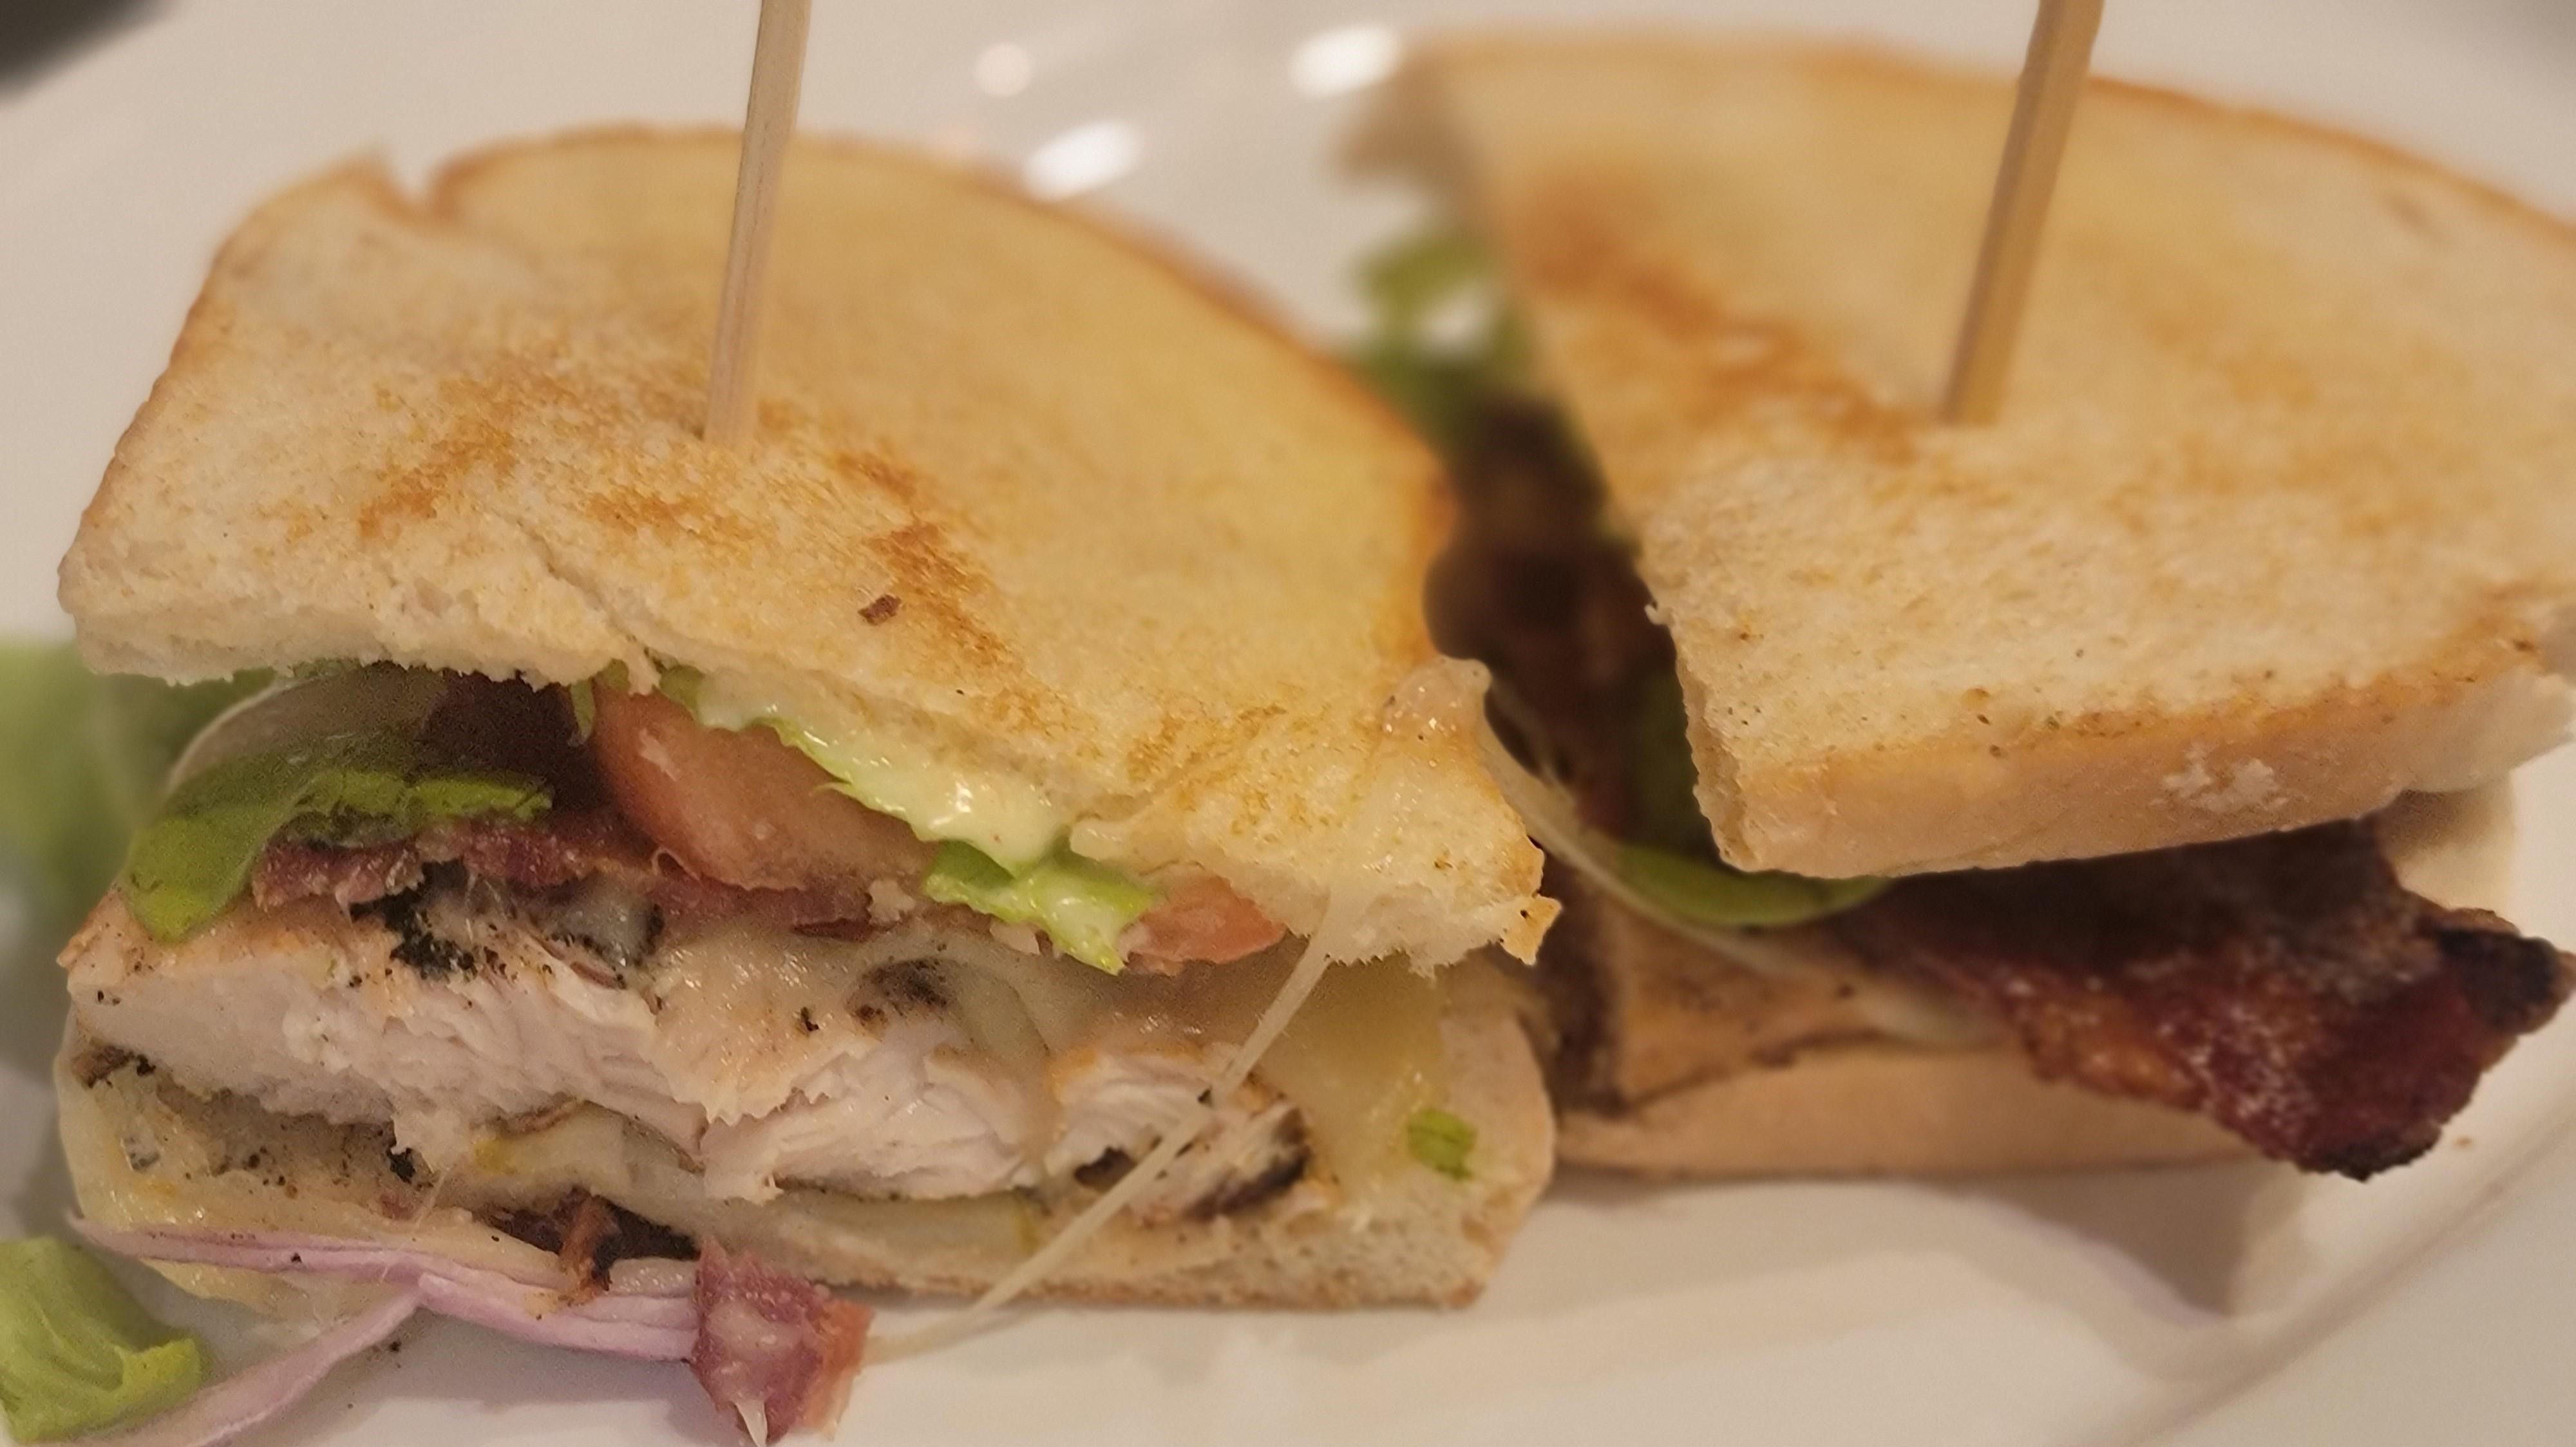 Grilled Chicken Club Sandwich